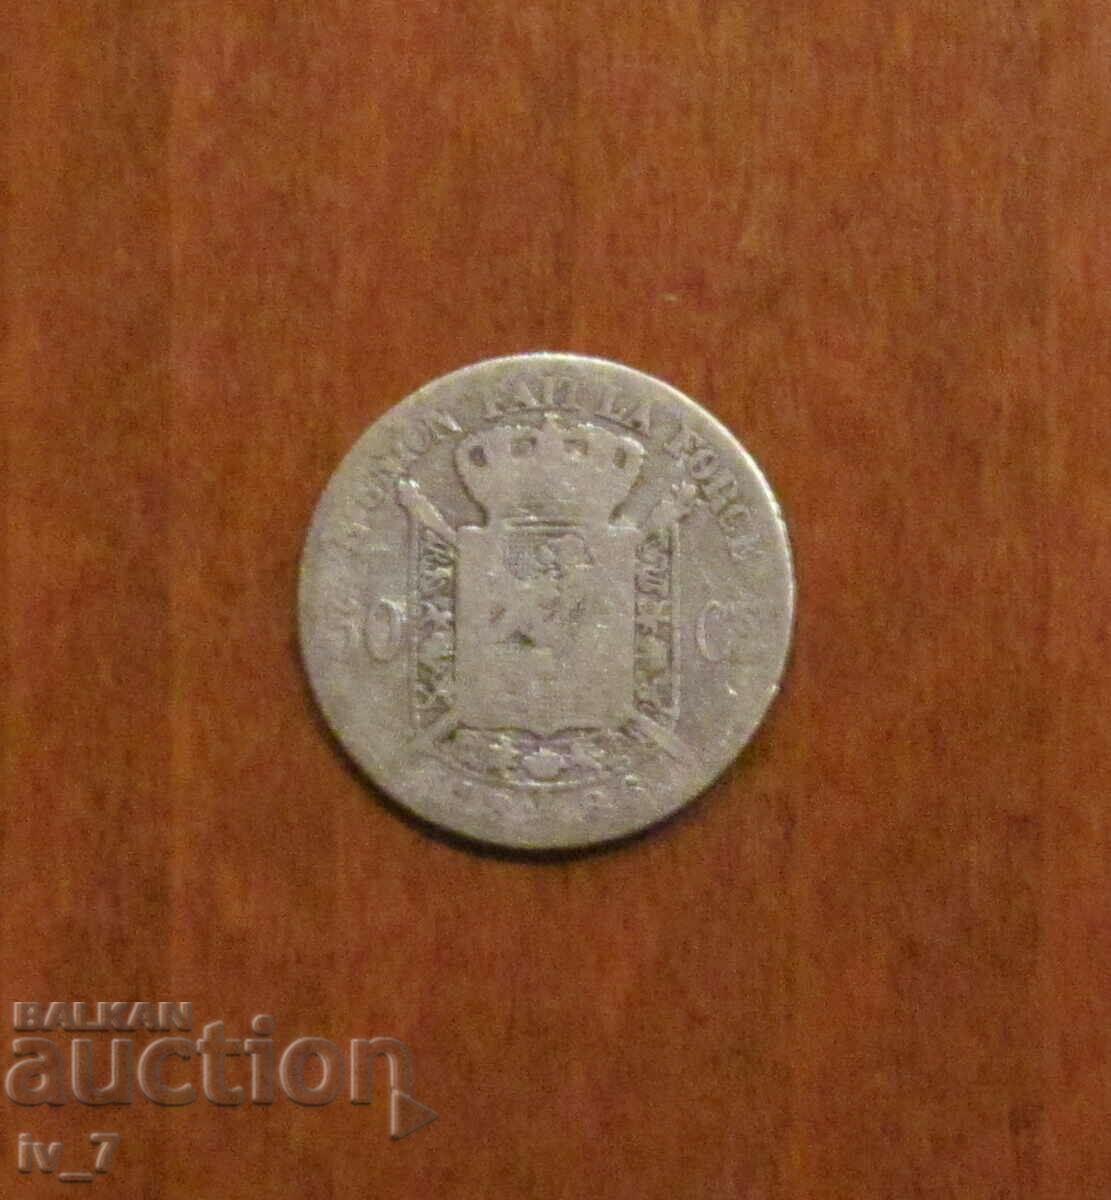 50 centimes 1886 Belgium, silver